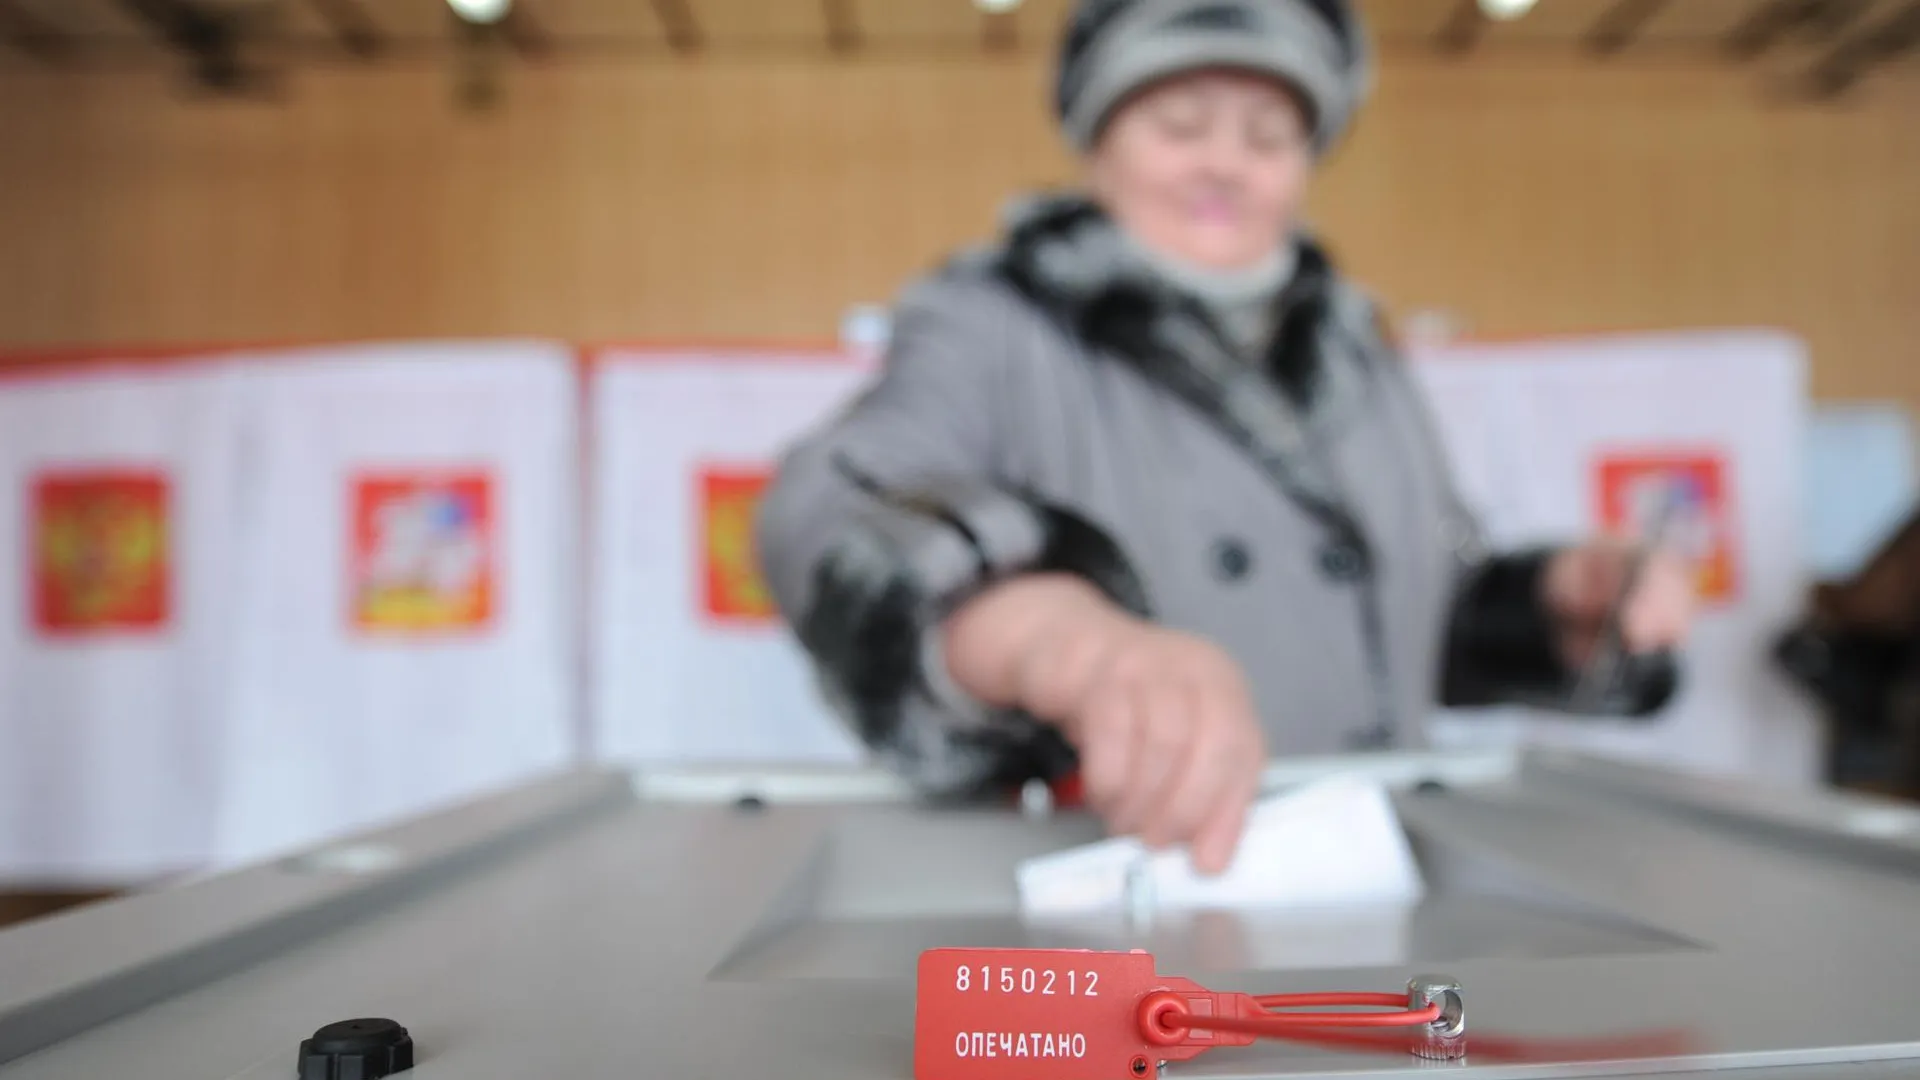 4 претендентам отказали в регистрации в качестве кандидата на пост губернатора Подмосковья